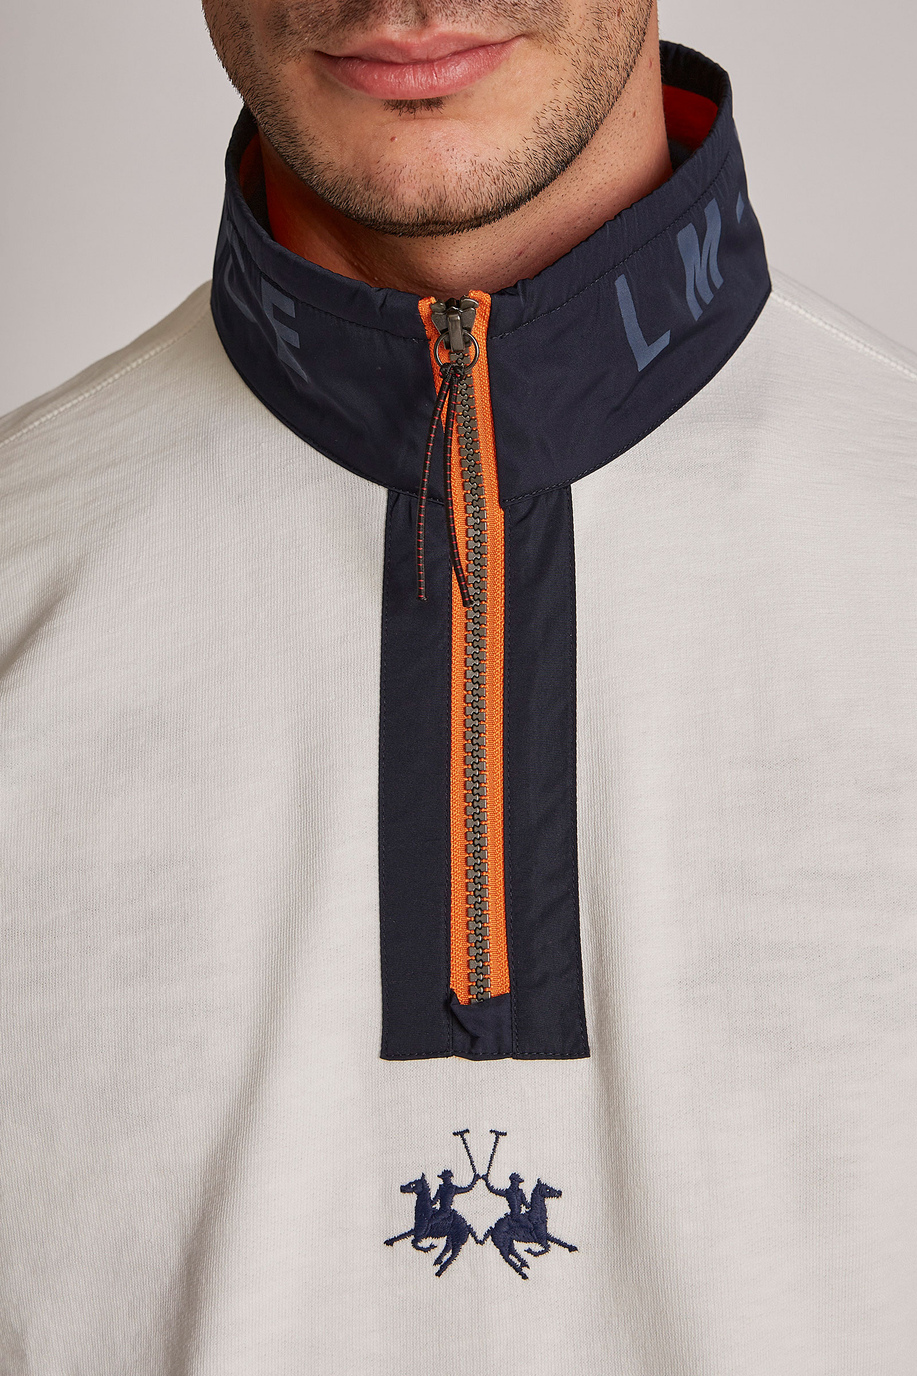 Men's oversized zip-up sweatshirt in 100% cotton fabric